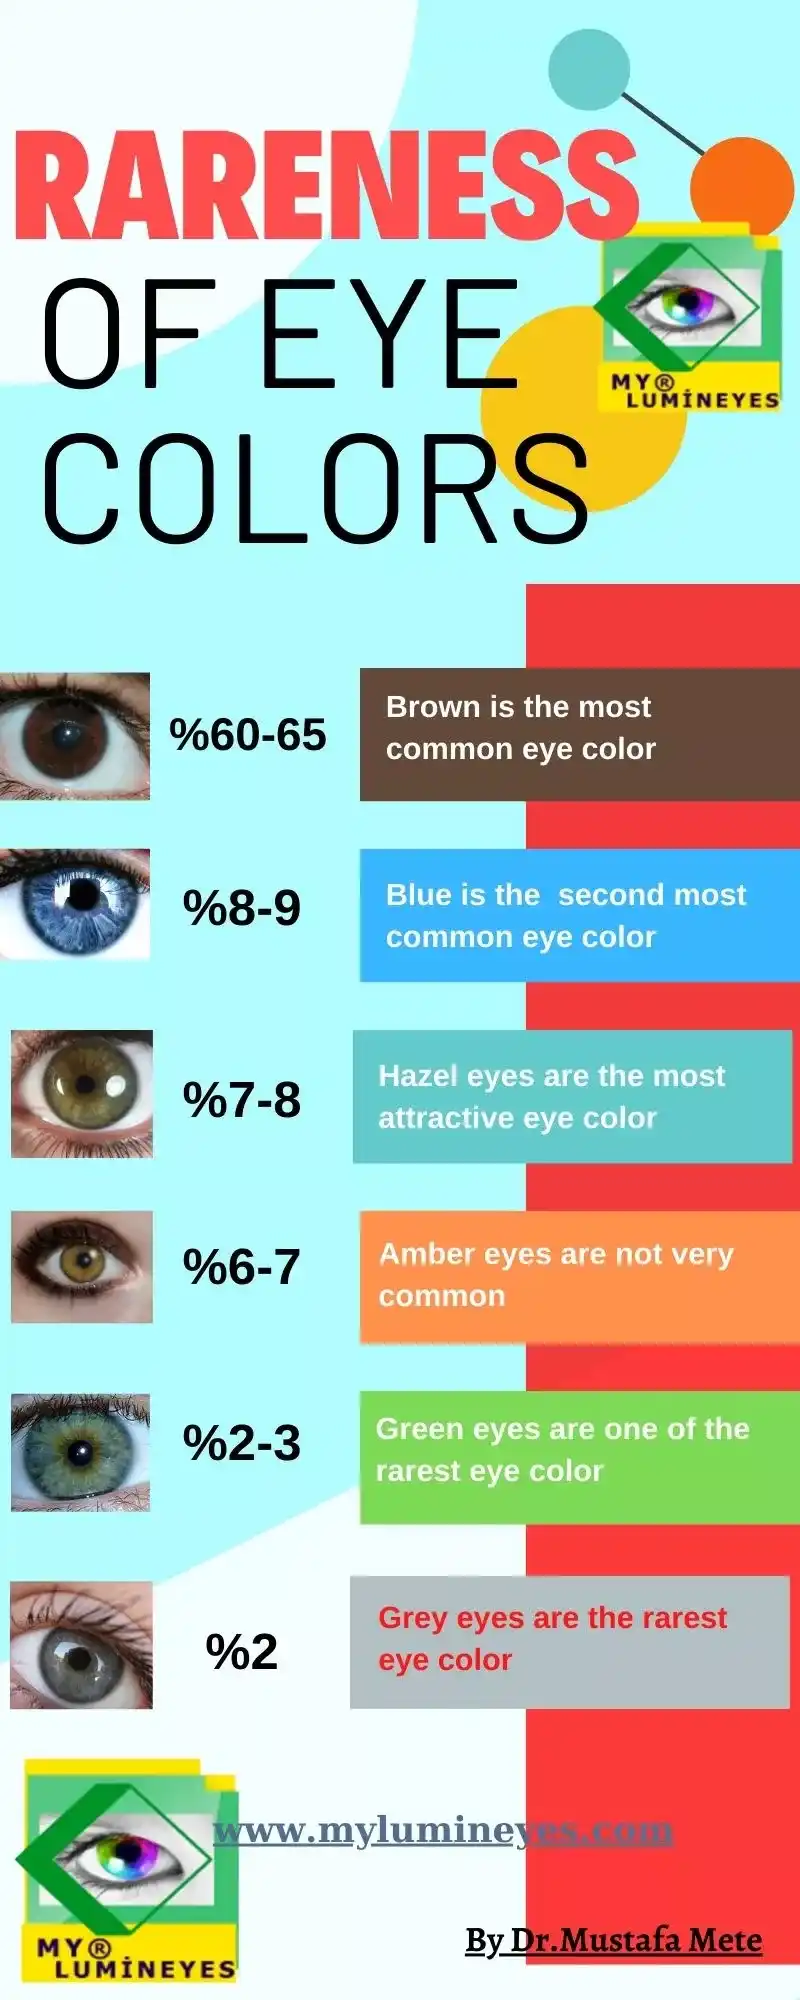 rarità del colore degli occhi e schema del colore degli occhi più raro-rarità del colore degli occhi